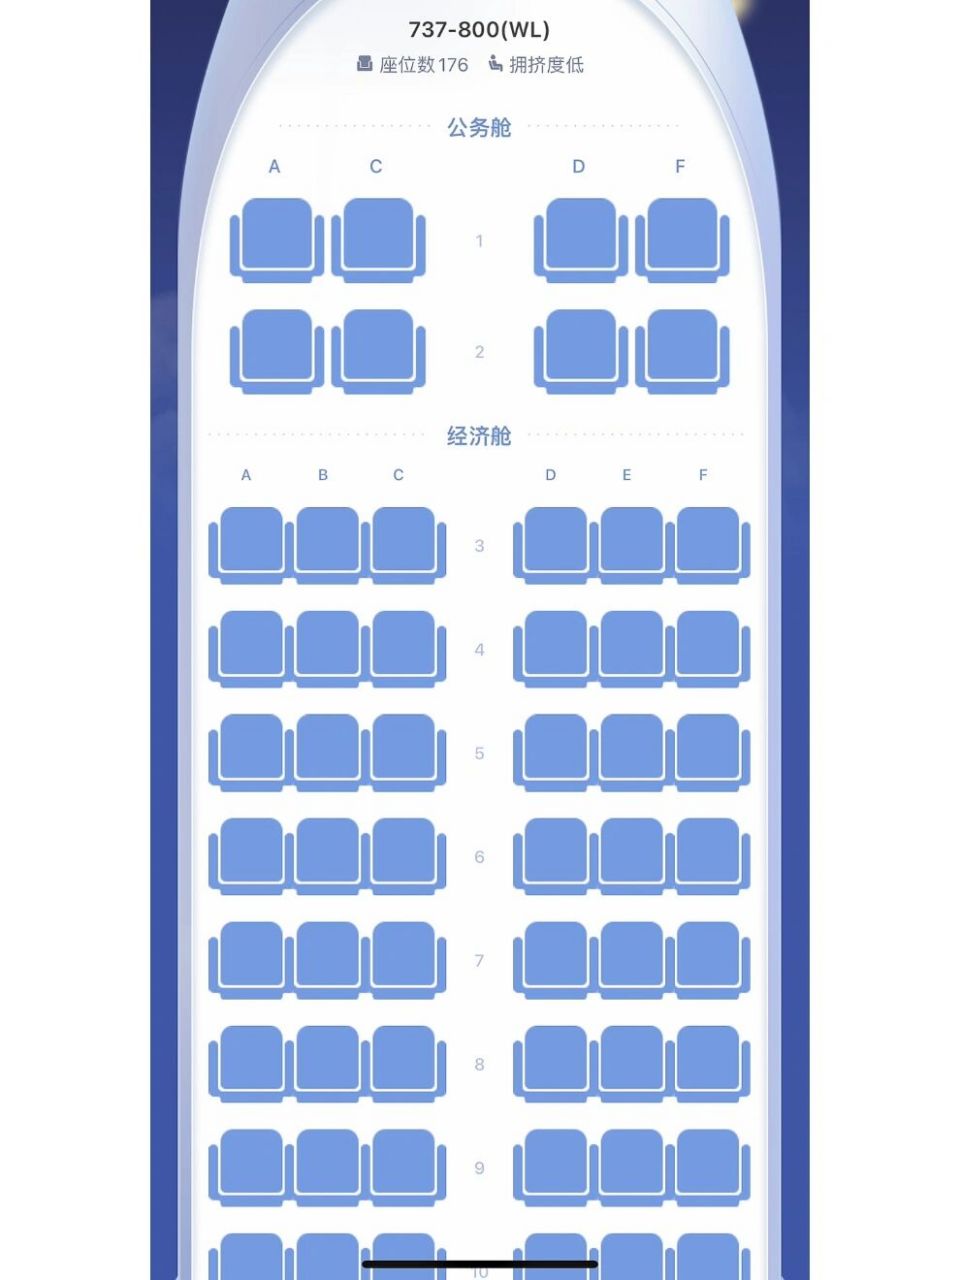 上航波音737(中)座位图图片